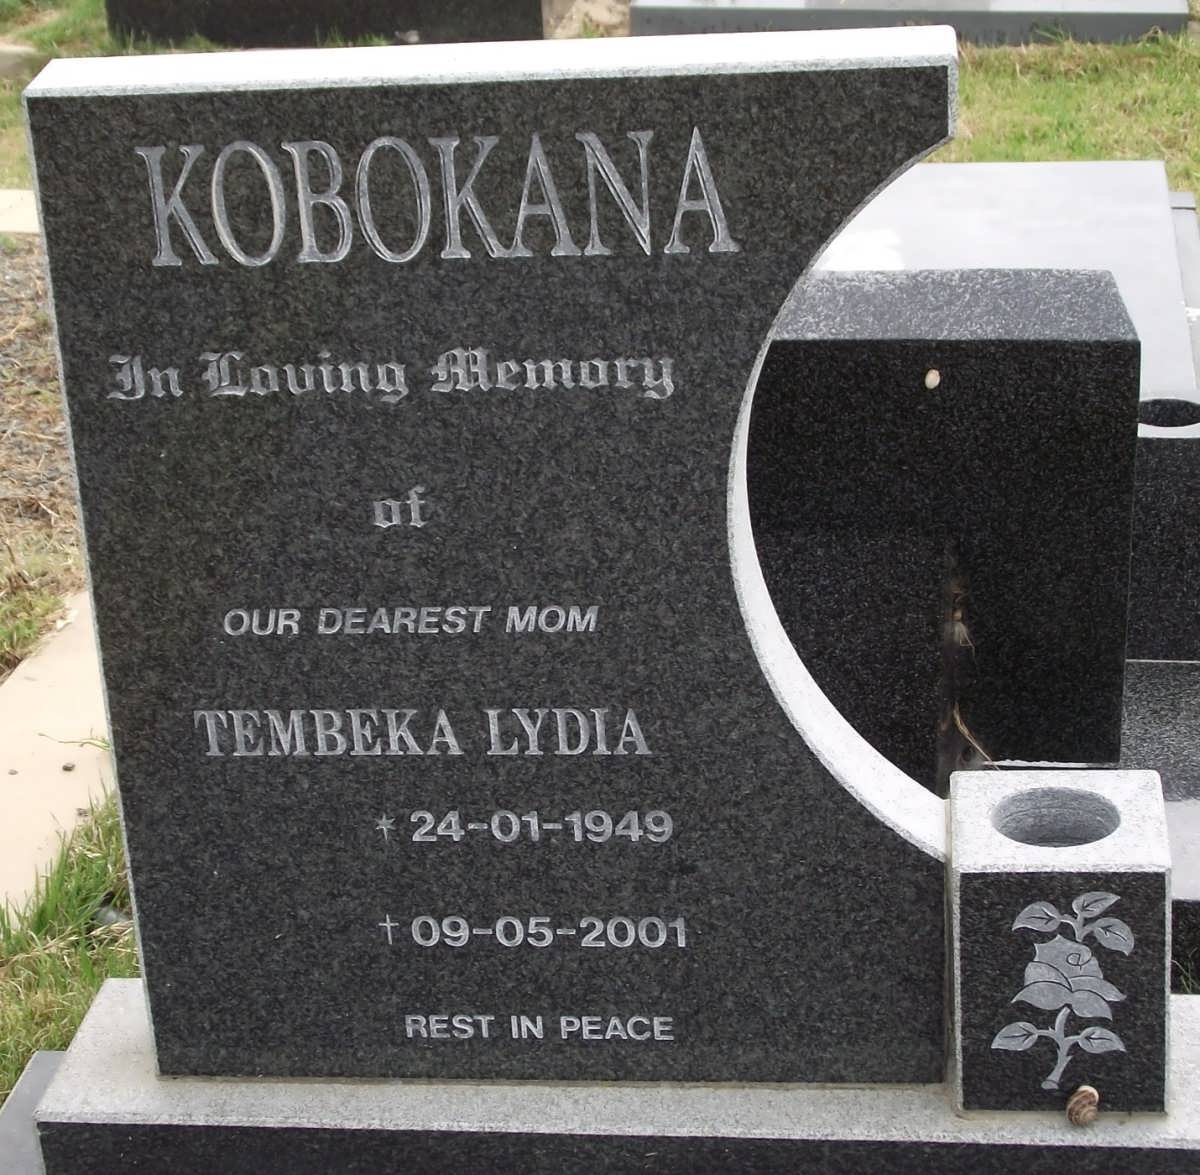 KOBOKANA Tembeka Lydia 1949-2001